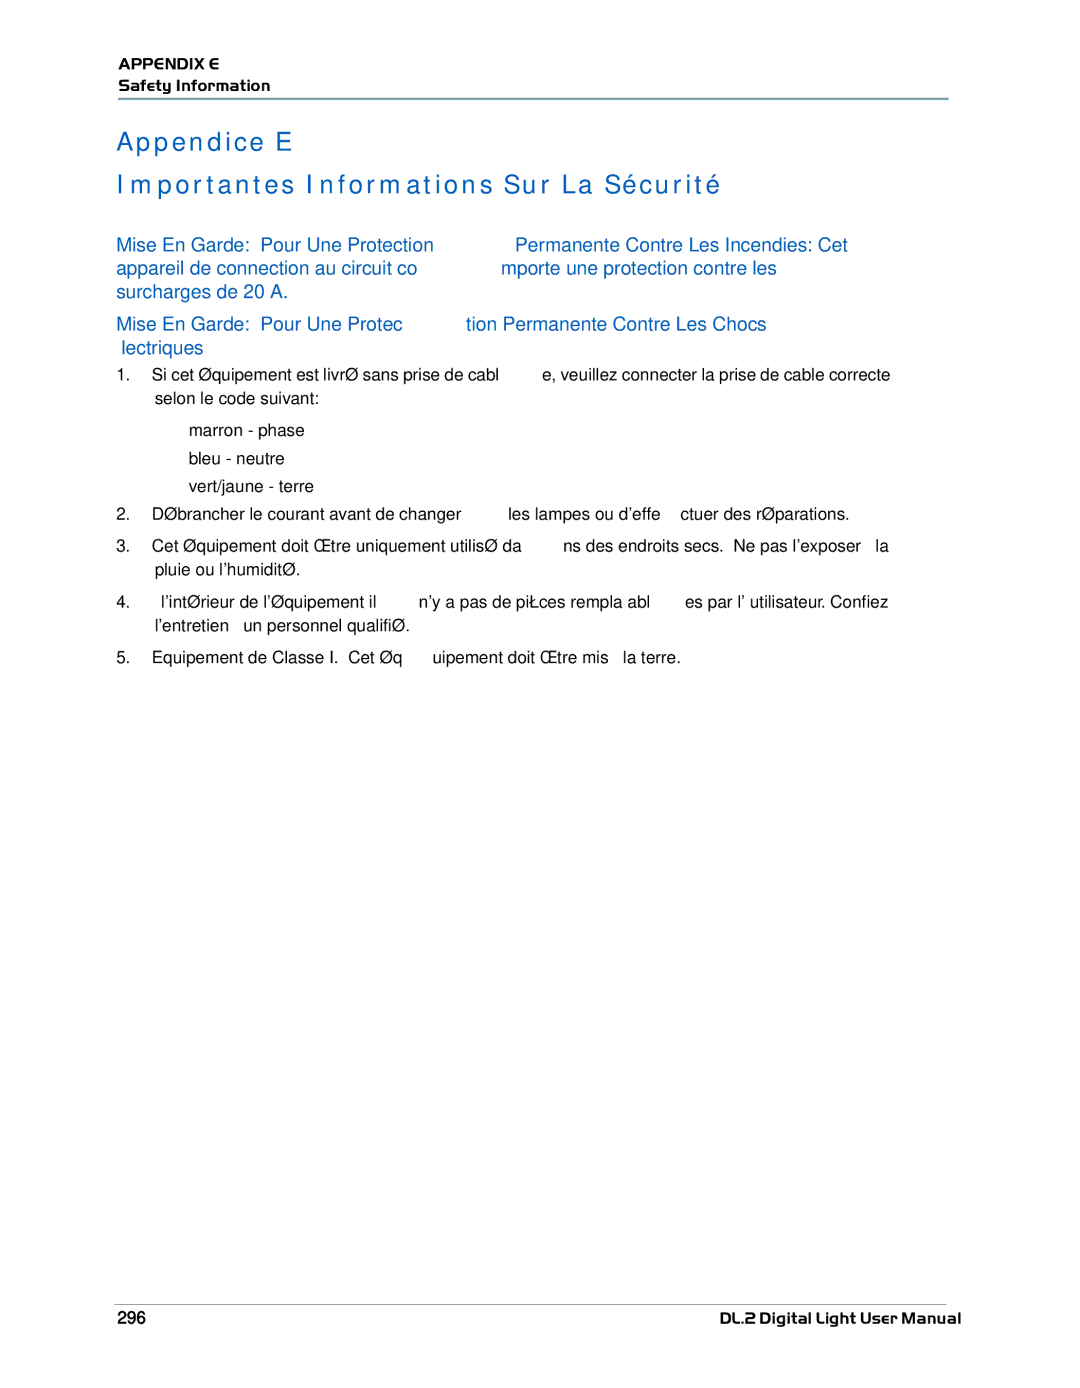 High End Systems DL.2 user manual Appendice E Importantes Informations Sur La Sécurité, 296 